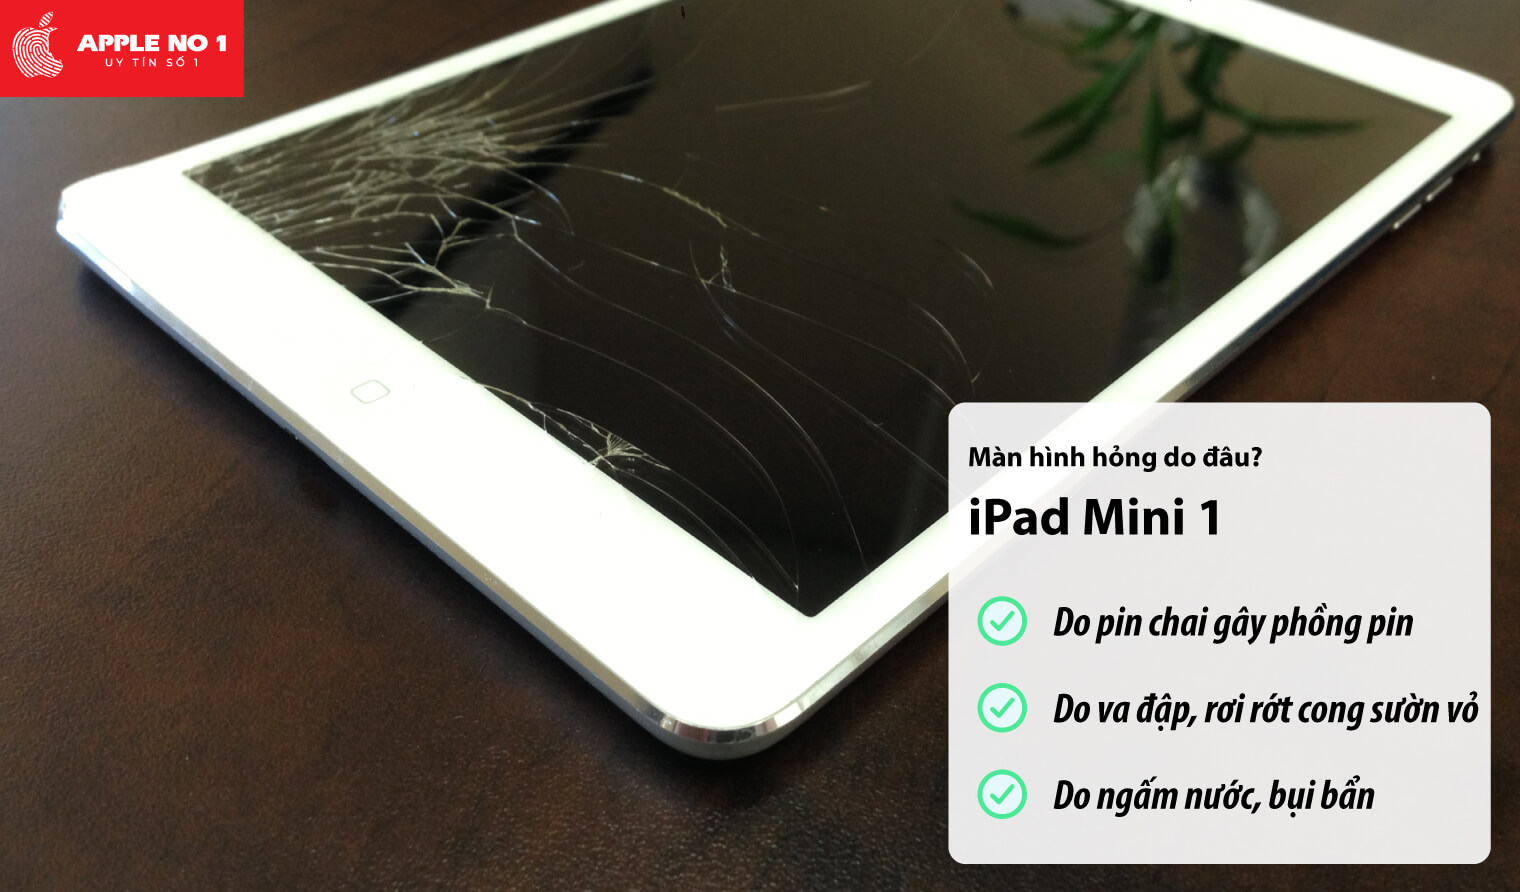 Màn hình iPad mini 1 bị hỏng do đâu?